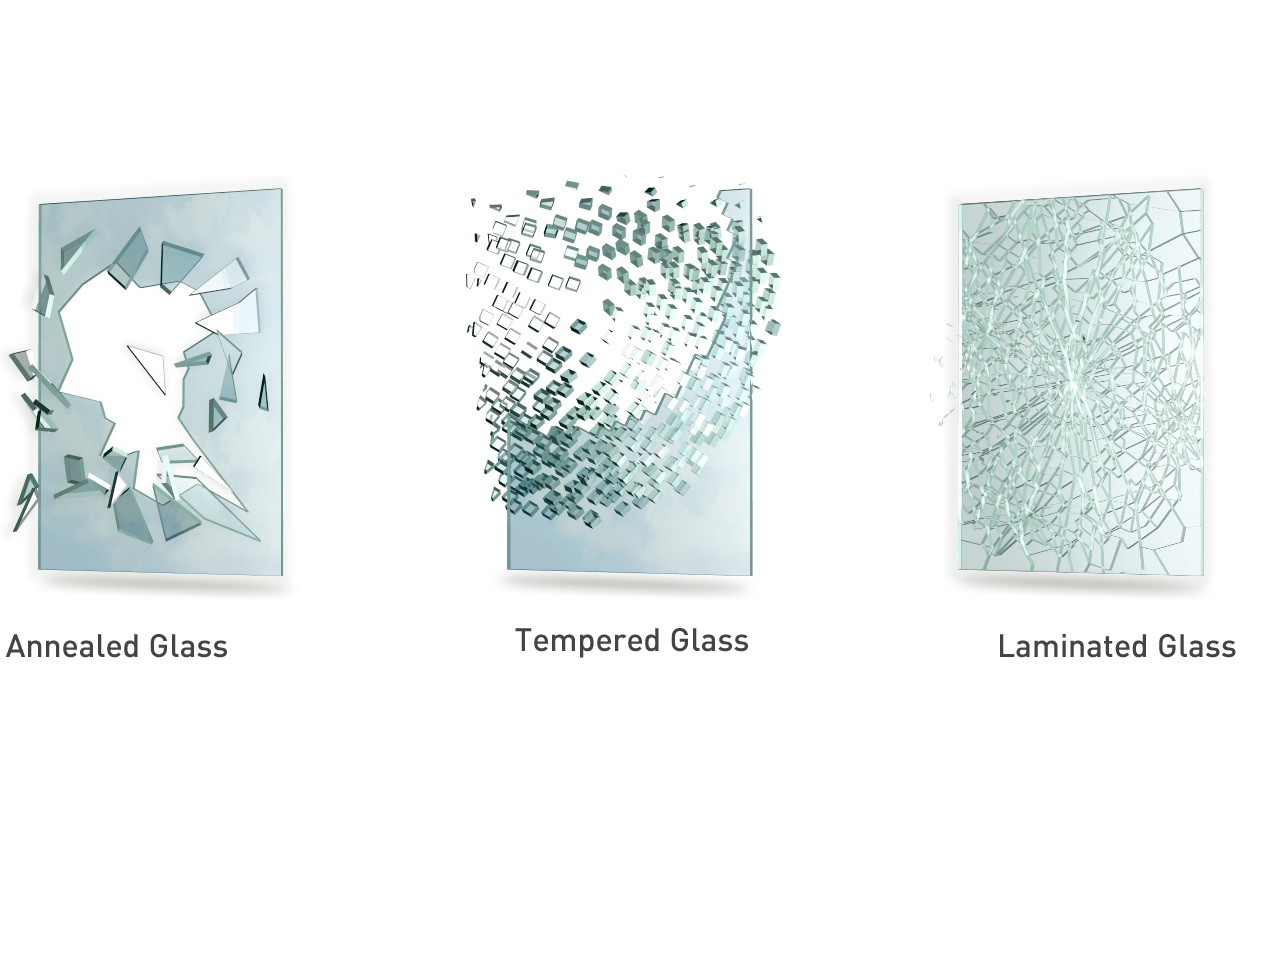 https://www.glassmirrorhouse.co.uk/blog/wp-content/uploads/2022/02/tempered-vs-annealed-vs-lamiinated.jpg